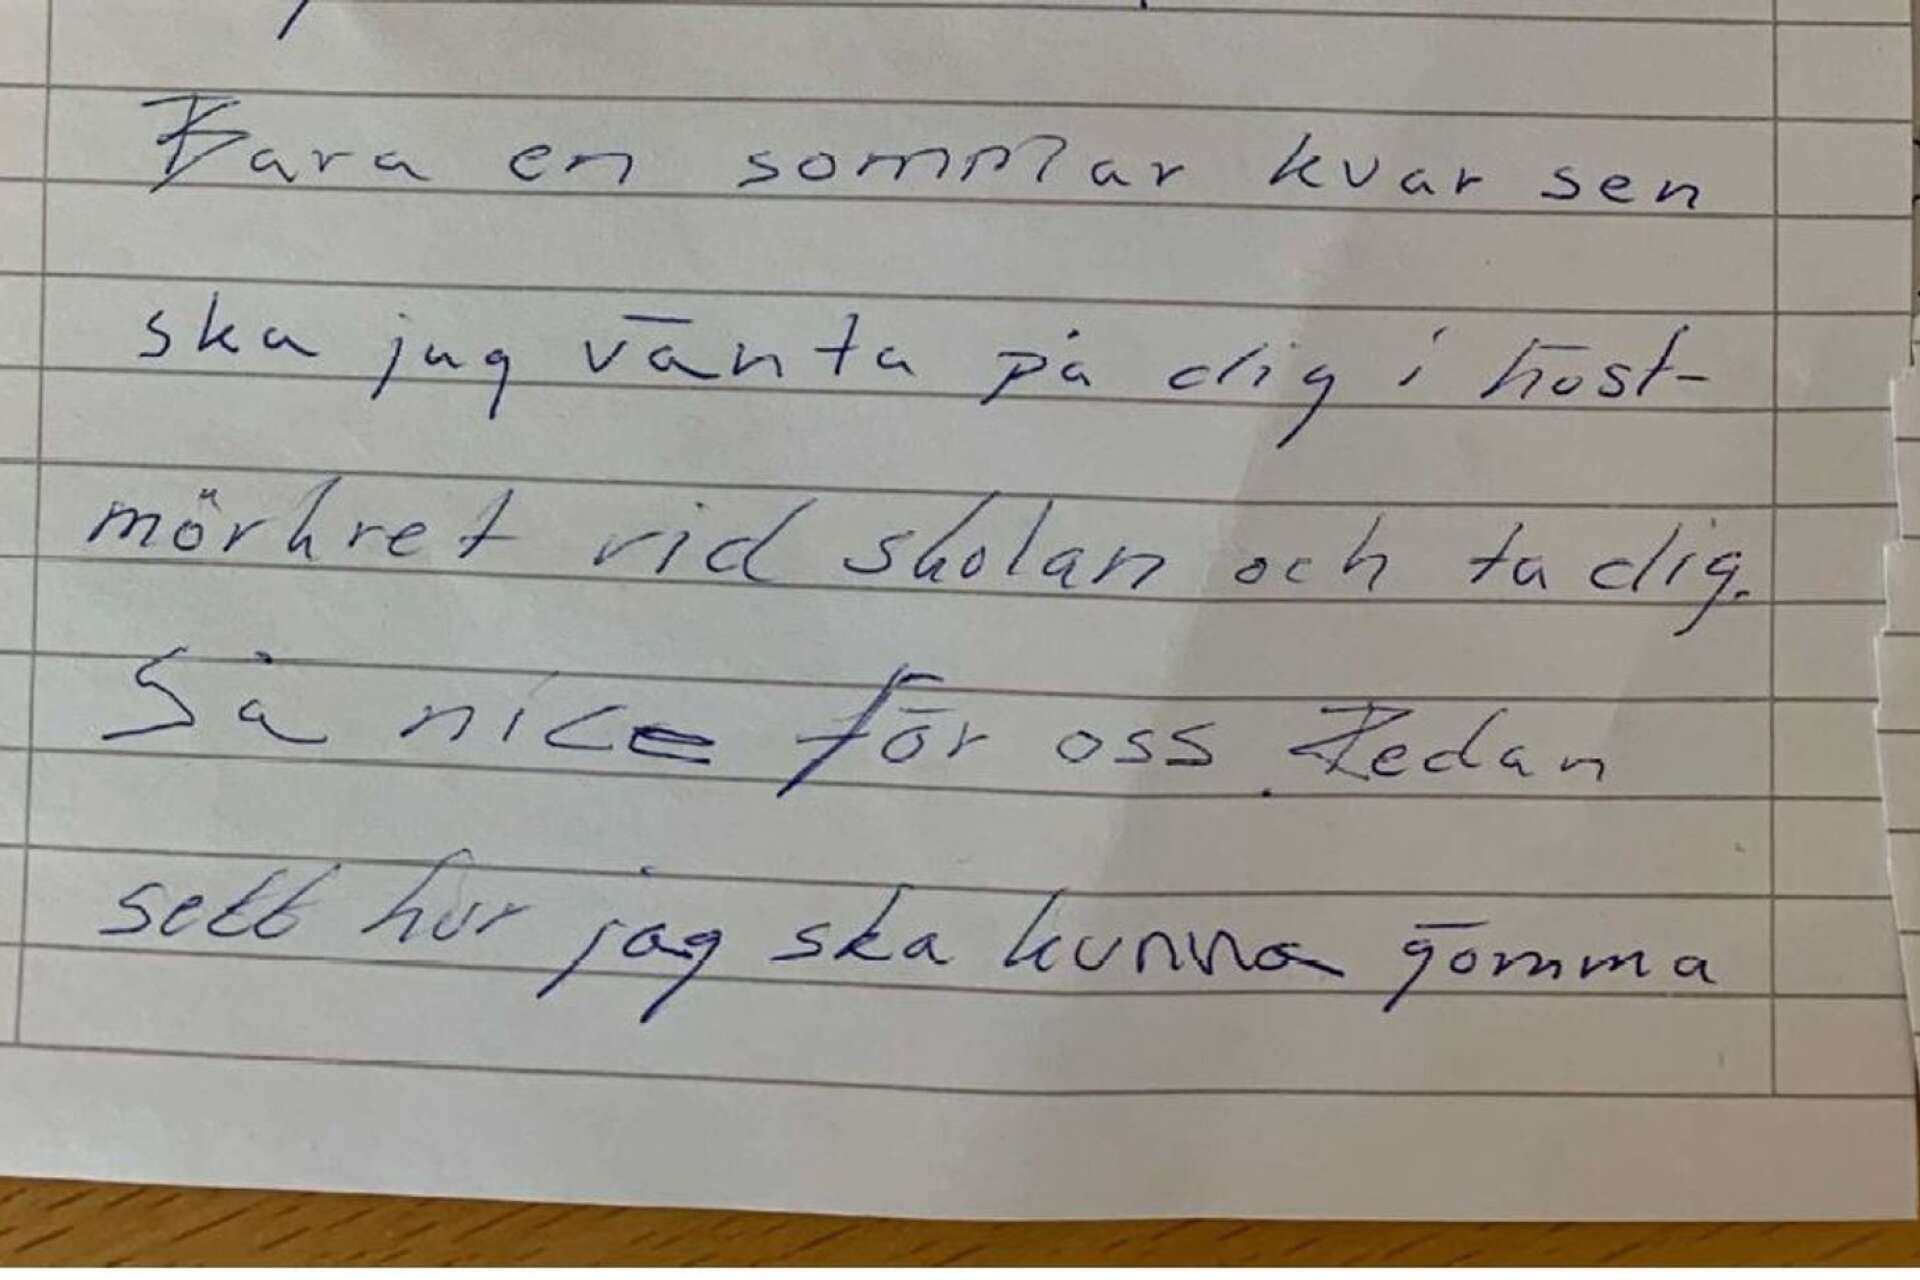 Läraren hotade en blivande kollega med våldtäkt i anonyma brev.